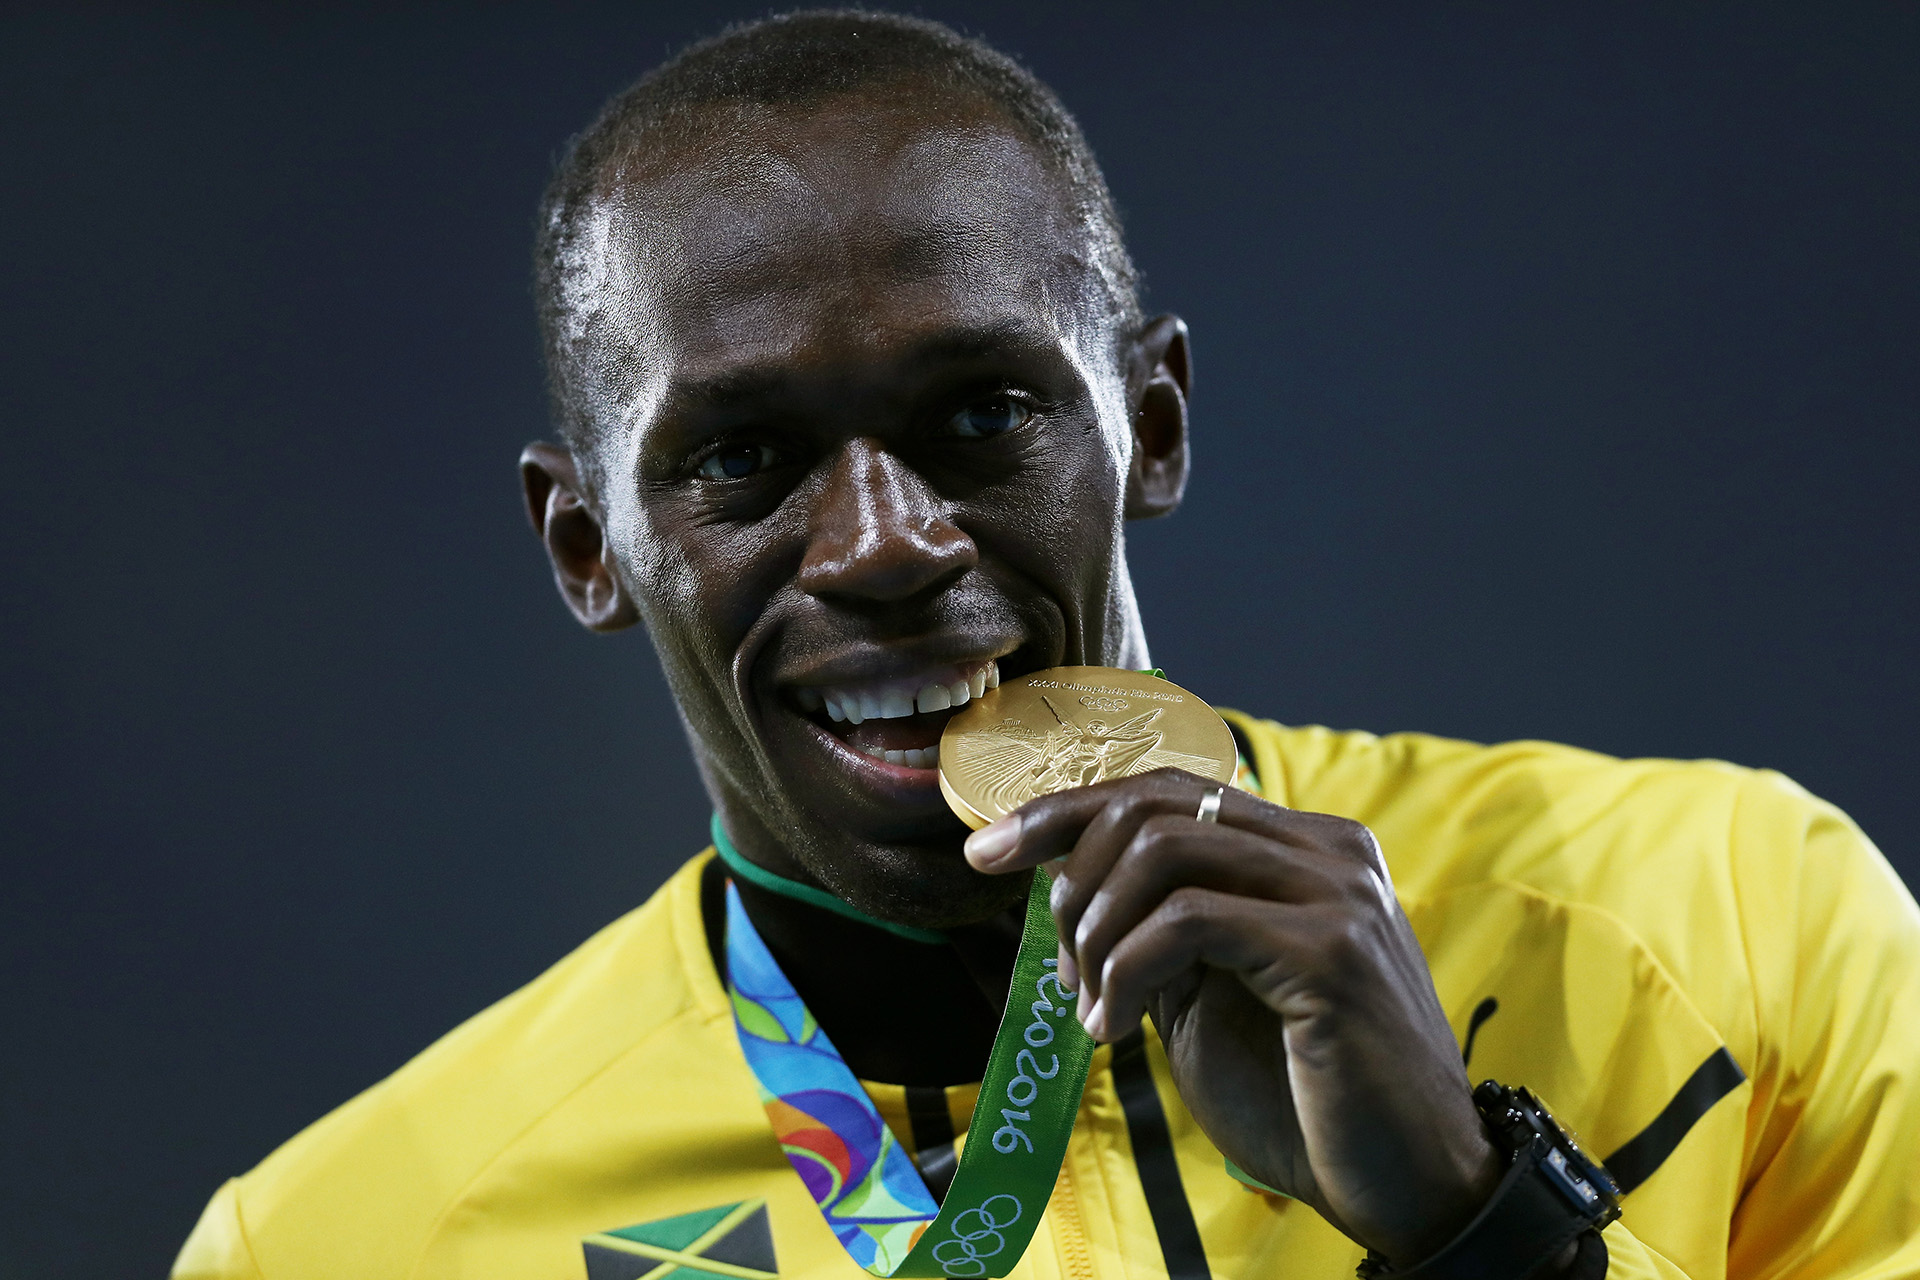  Усейн Болт на пьедестале во время церемонии награждения медалями в мужской эстафете 4 х 100 метров Олимпийских игр 2016 года в Рио-де-Жанейро 